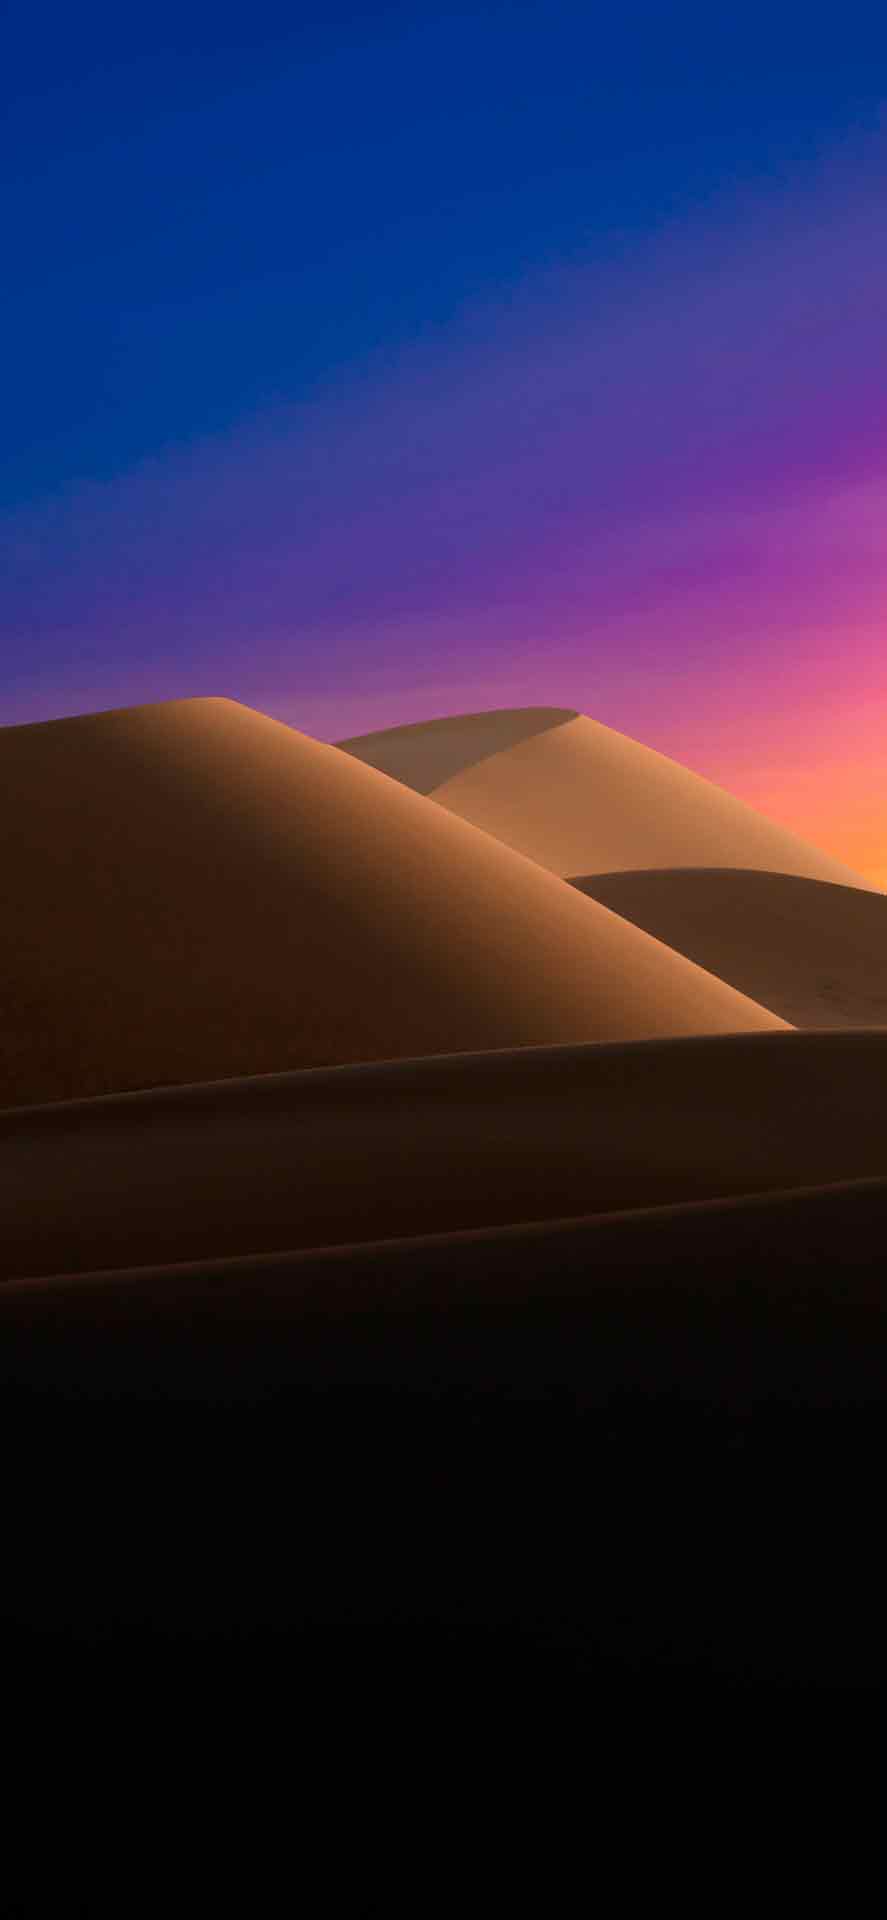 沙漠沙丘与渐变的天空 iPhone 壁纸 02